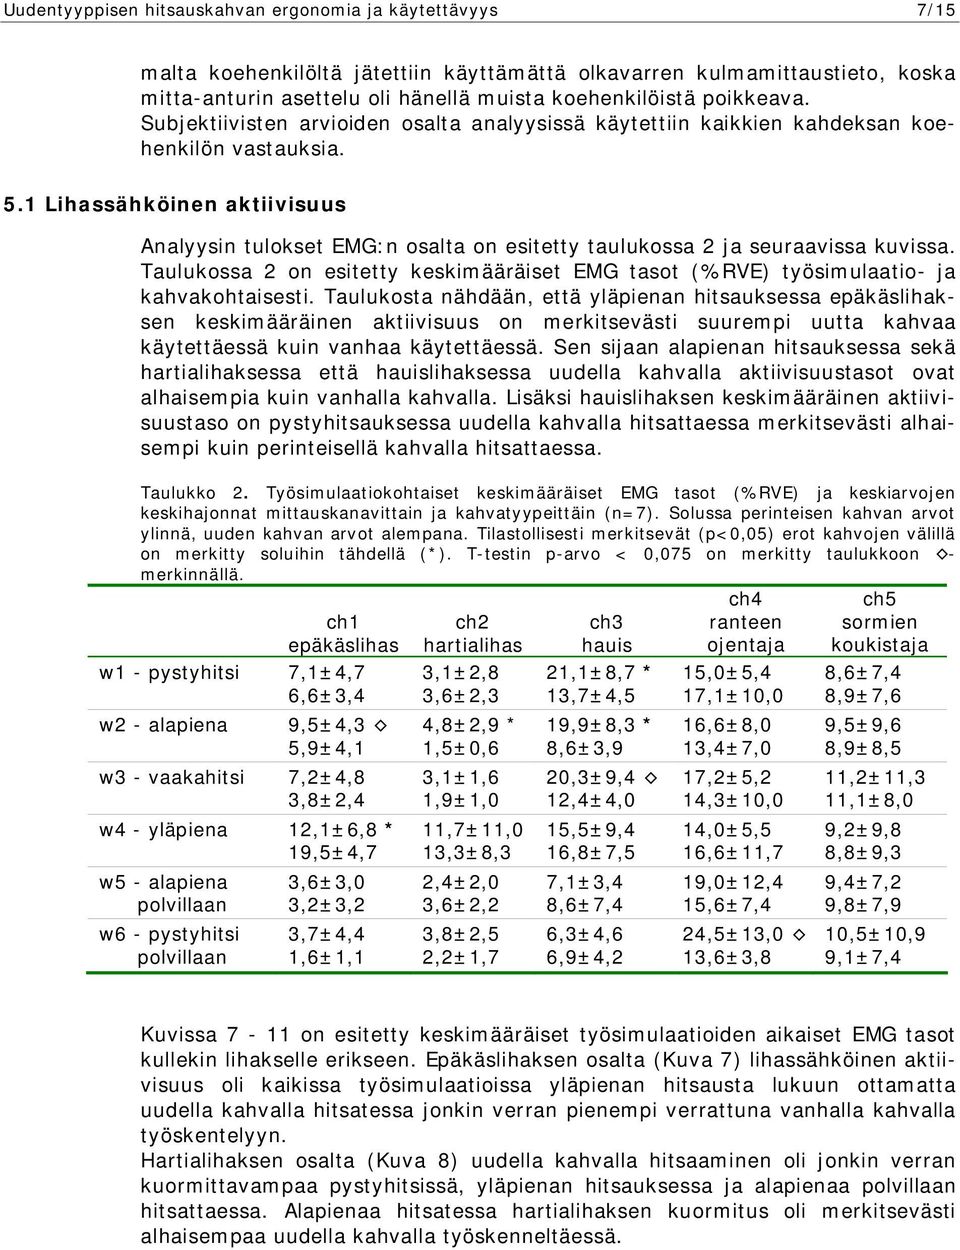 1 Lihassähköinen aktiivisuus Analyysin tulokset EMG:n osalta on esitetty taulukossa 2 ja seuraavissa kuvissa.